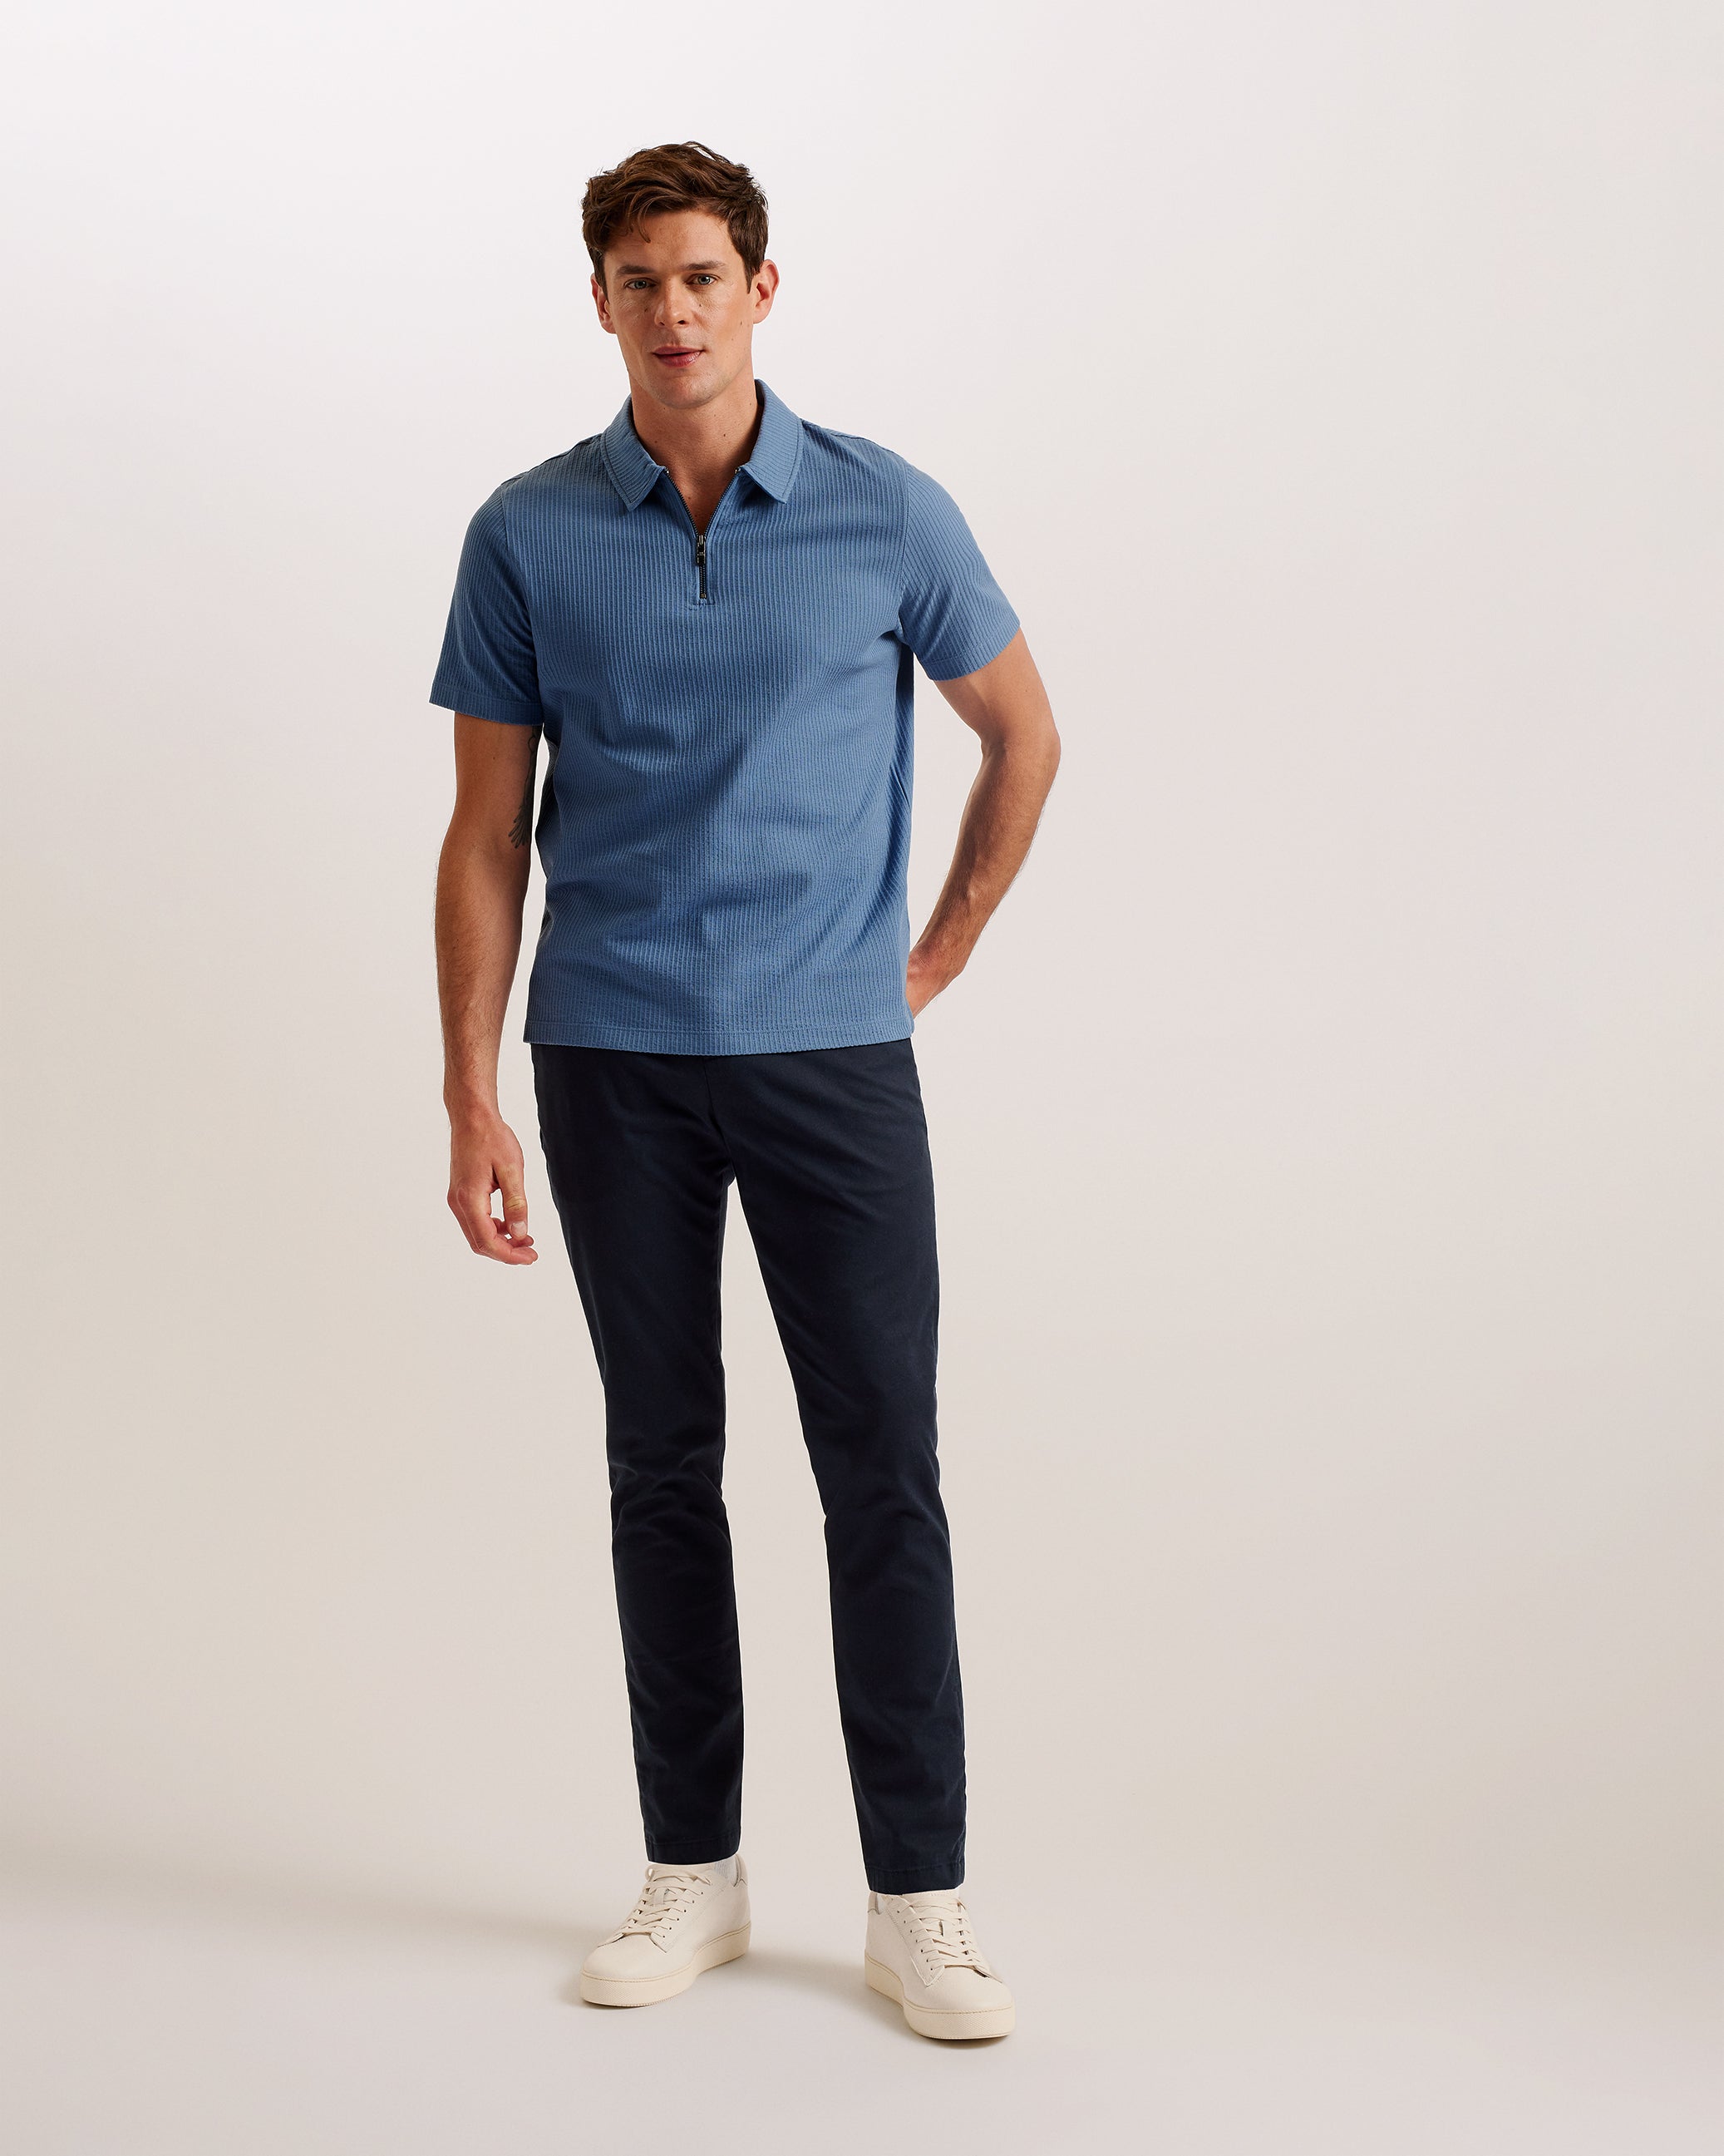 Zarkes Short Sleeve Ribbed Zip Polo Shirt Blue